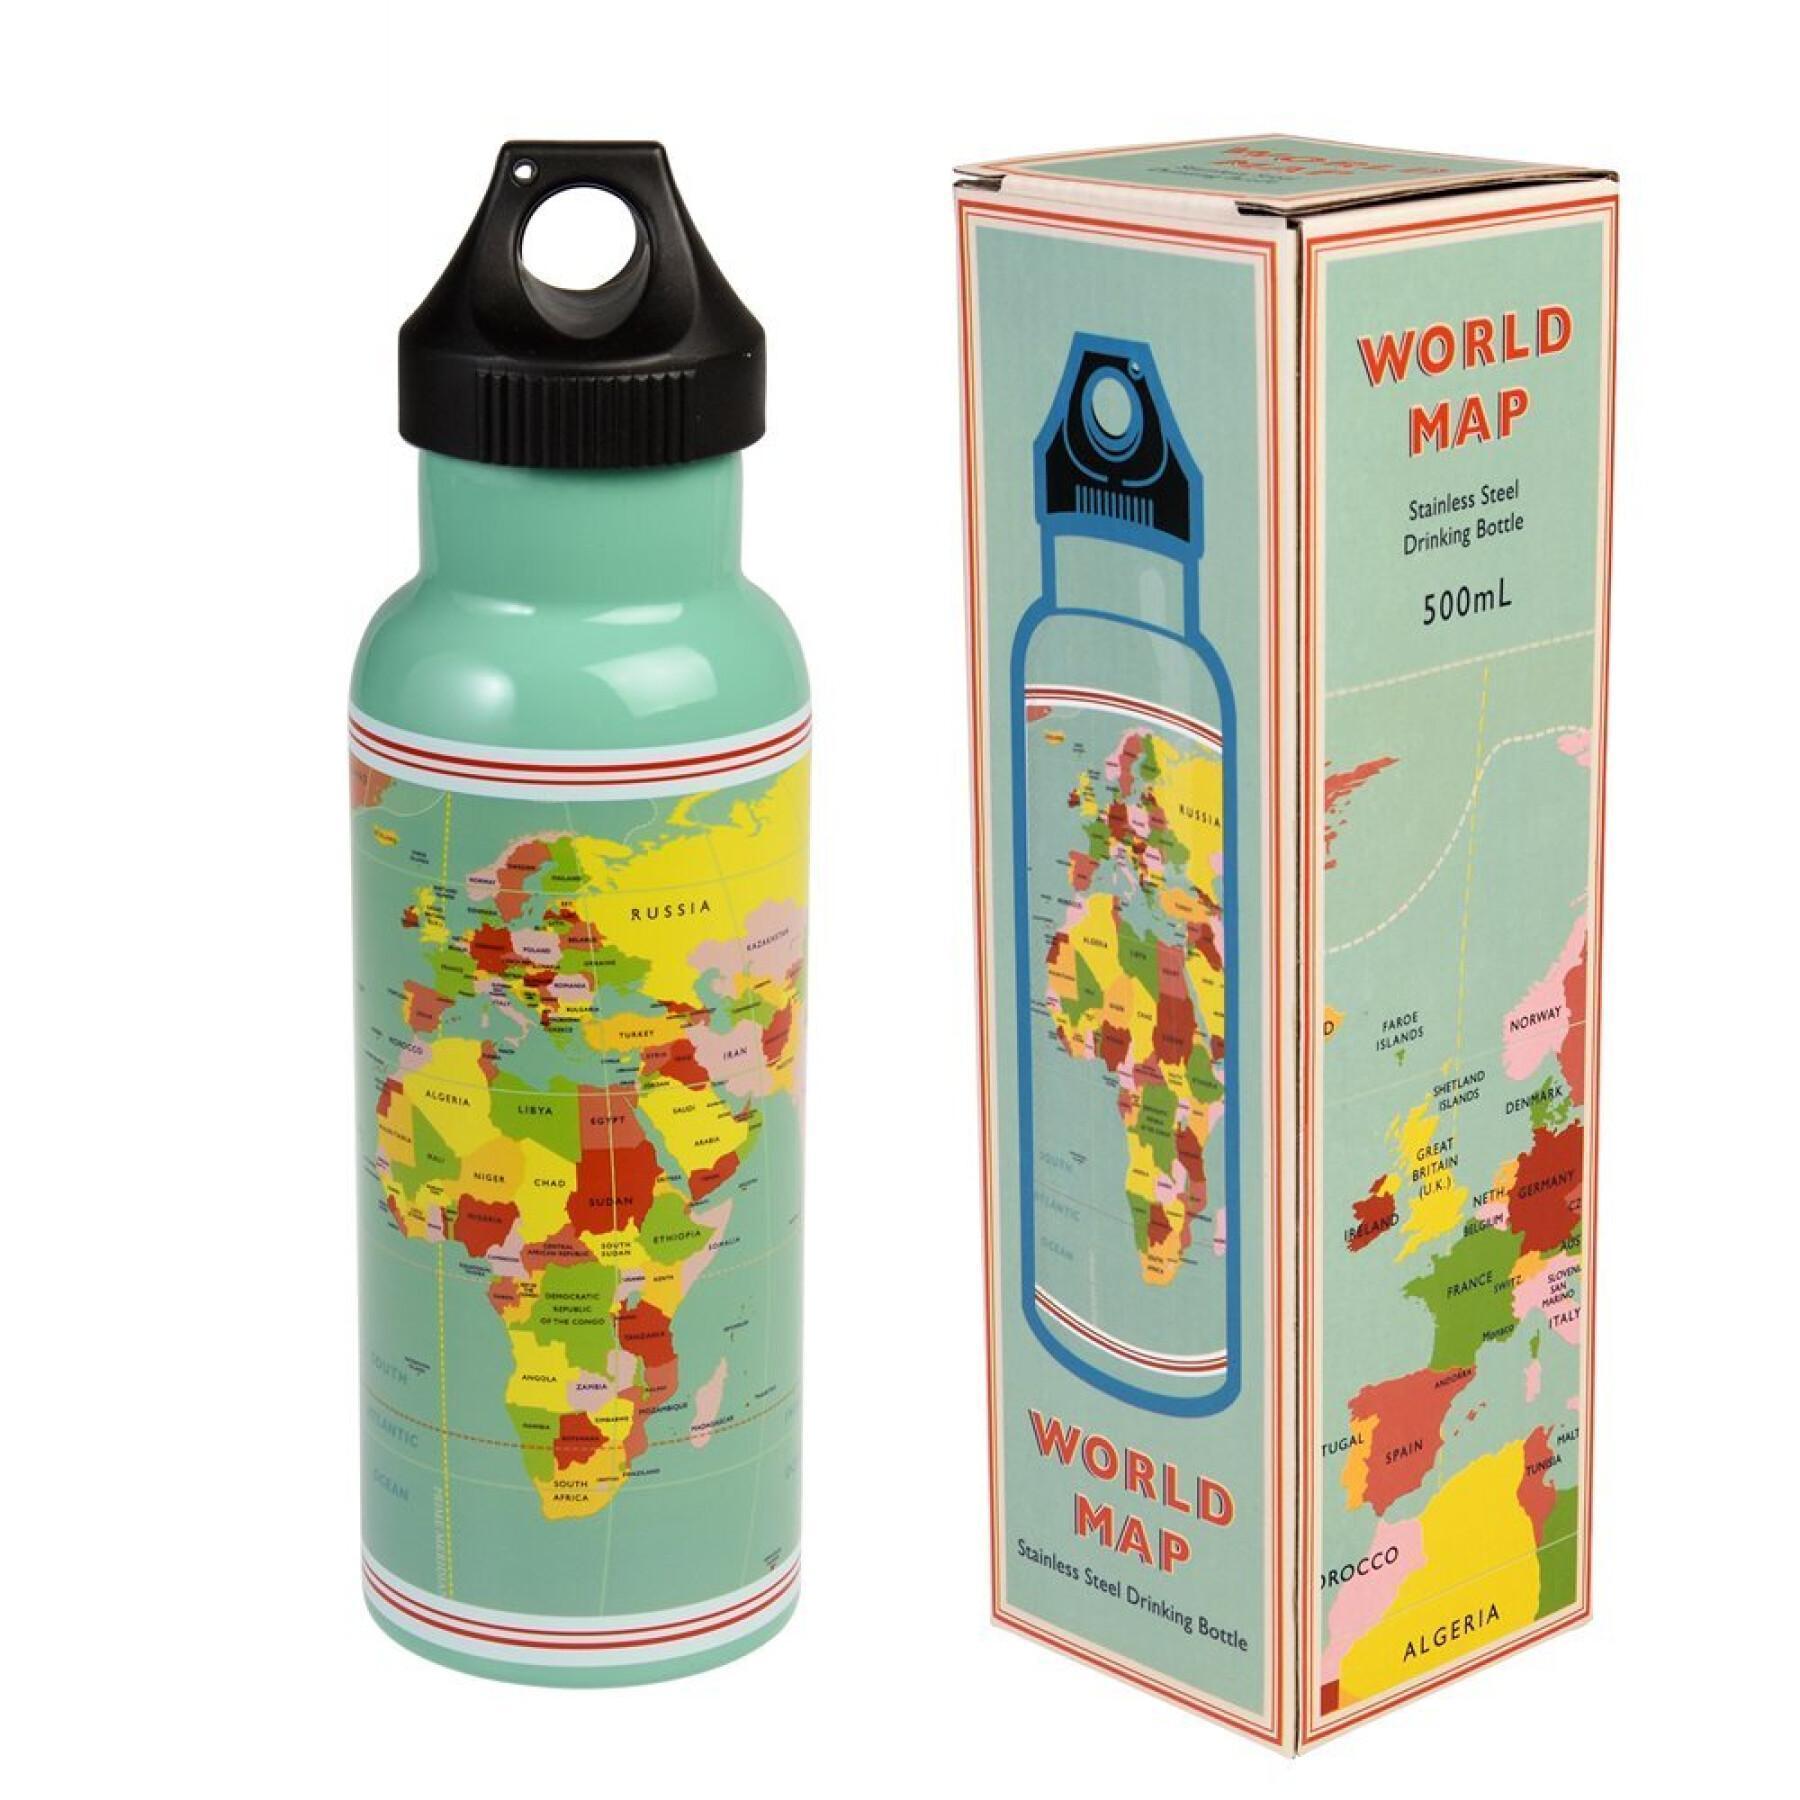 Stainless steel bottle for children Rex London World Map